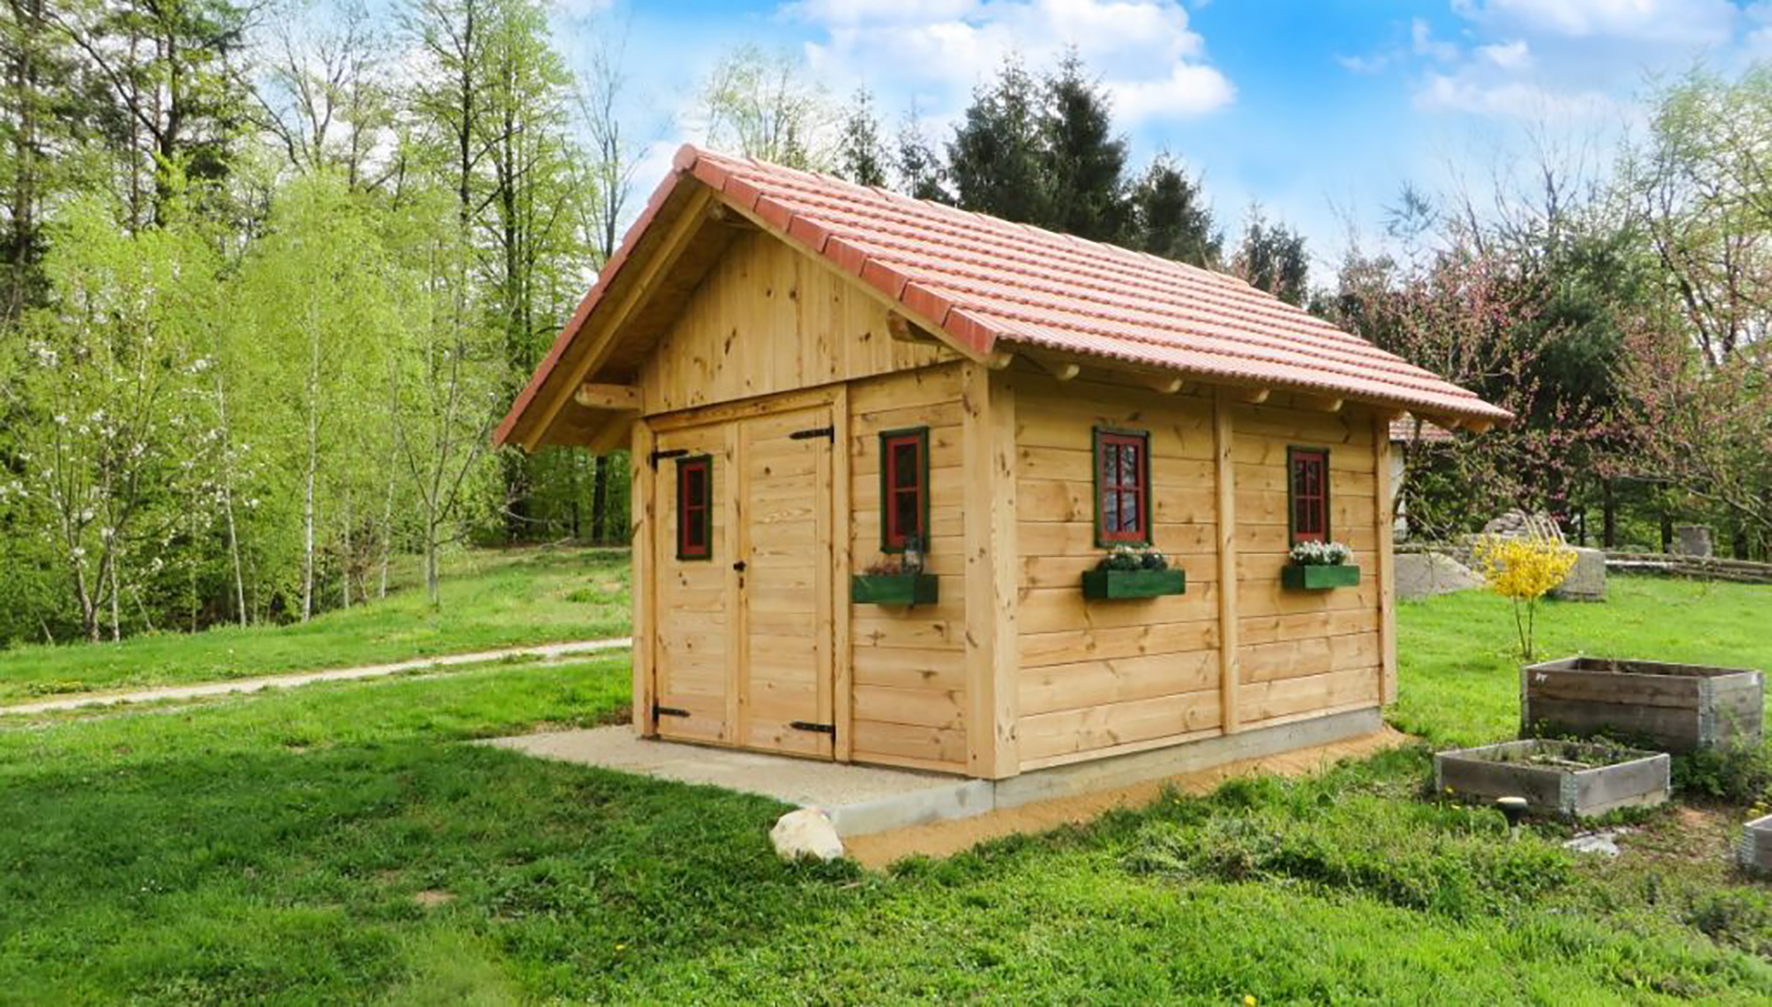 Caseta de madera para jardinería  Casetas de jardin, Caseta de madera,  Casita madera jardin